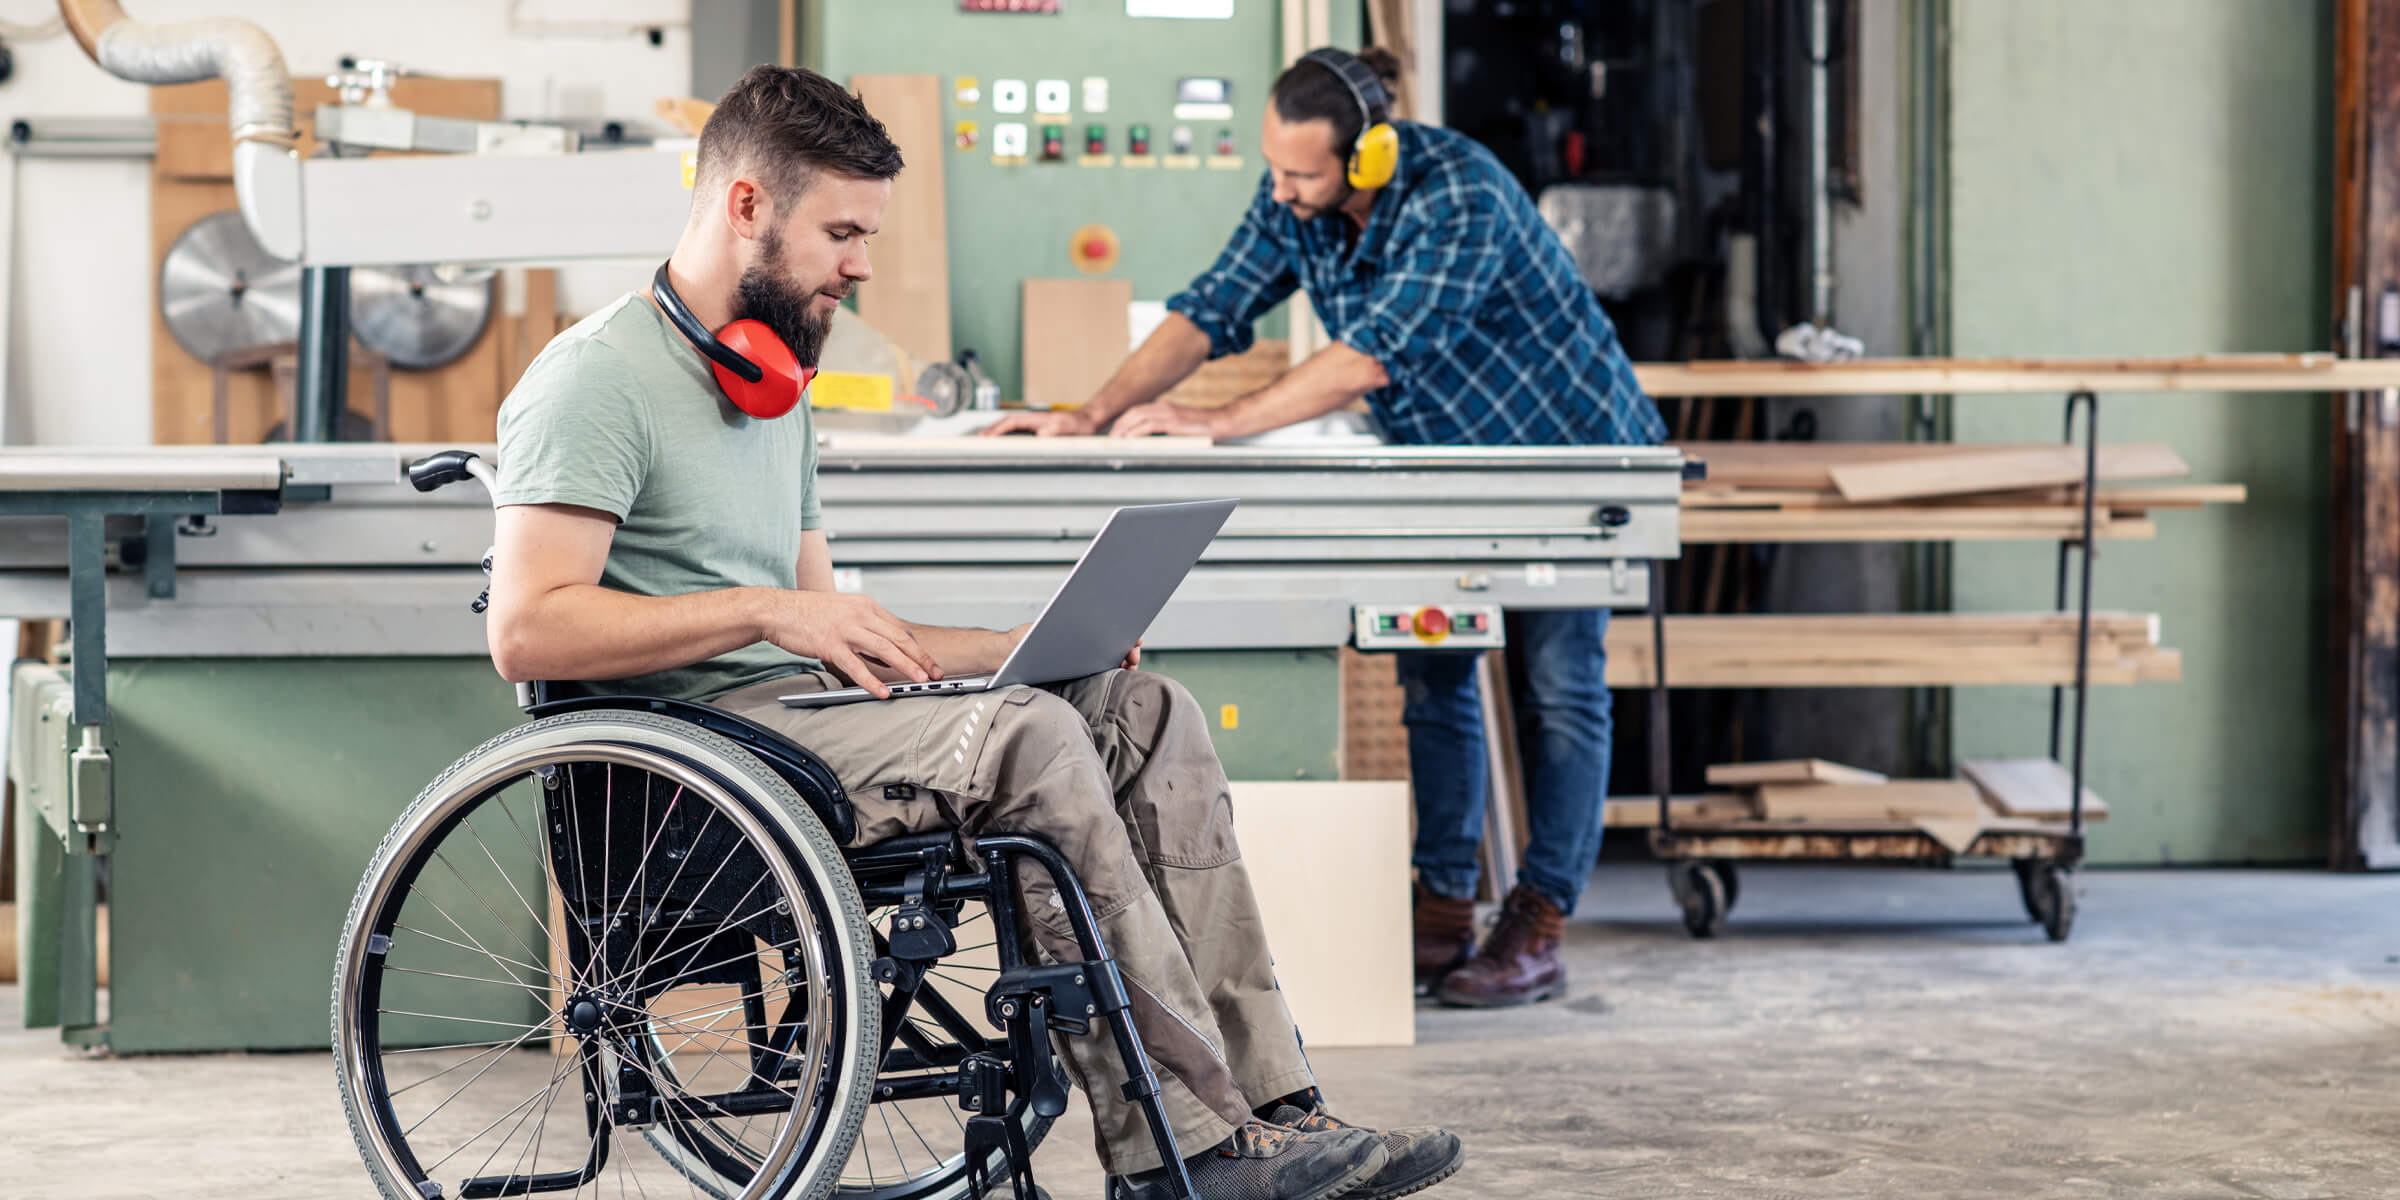 Junger Mensch sitzt im Rollstuhl und schaut in seinen Laptop, im Hintergrund sieht man, dass er in einer Werkstatt ist und ein anderer junger Mensch dort an einer Werkbank mit Holz arbeitet